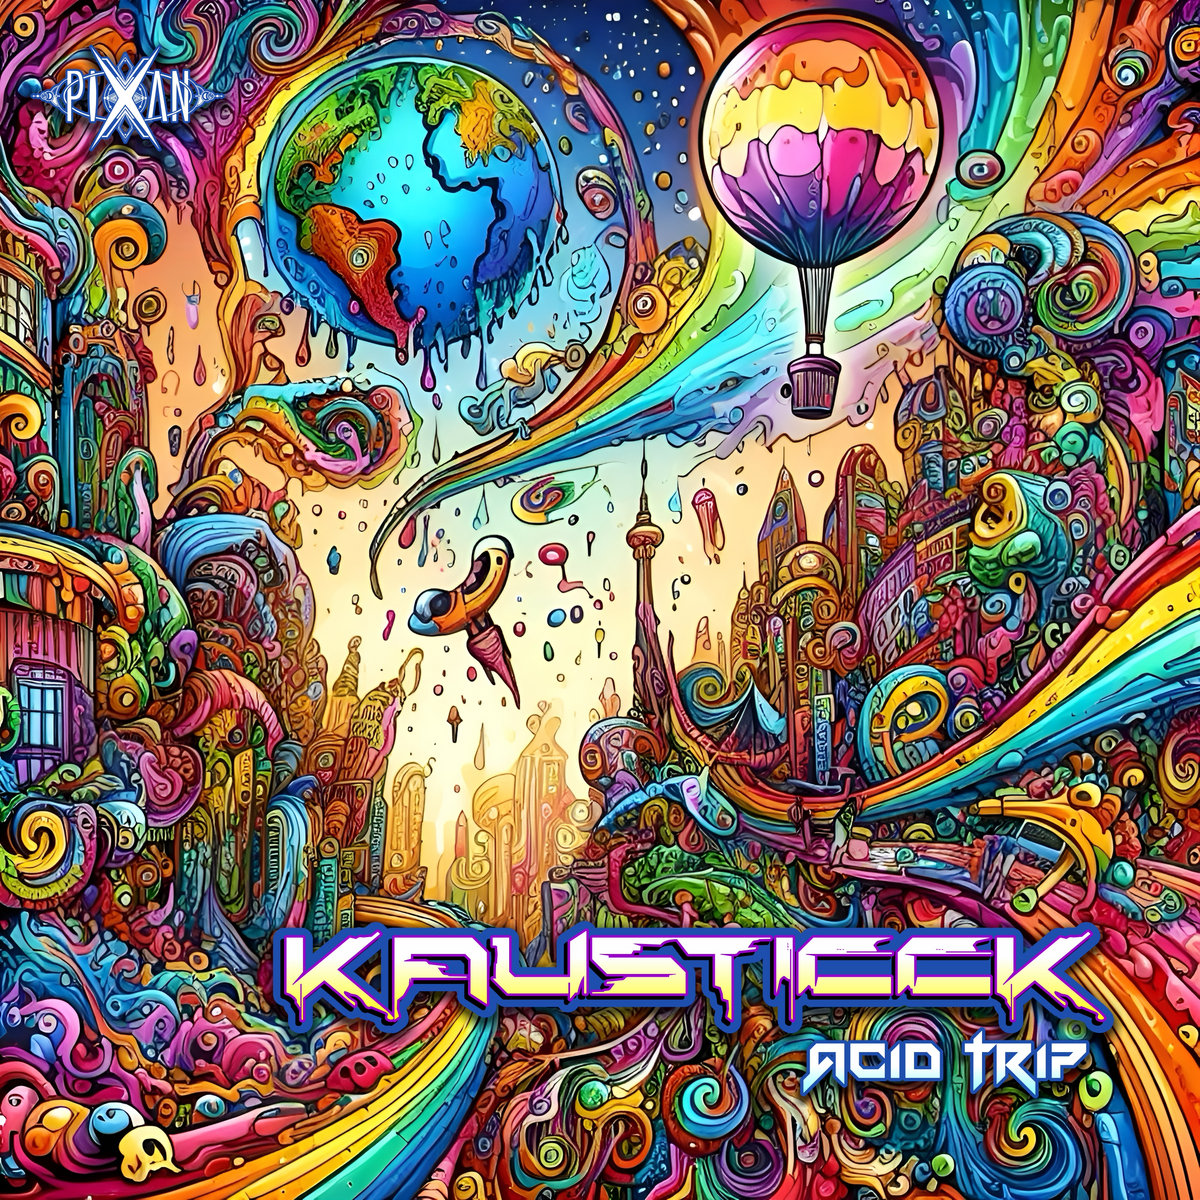 Kausticck - Acid Trip | Kausticck | Pixan Recordings